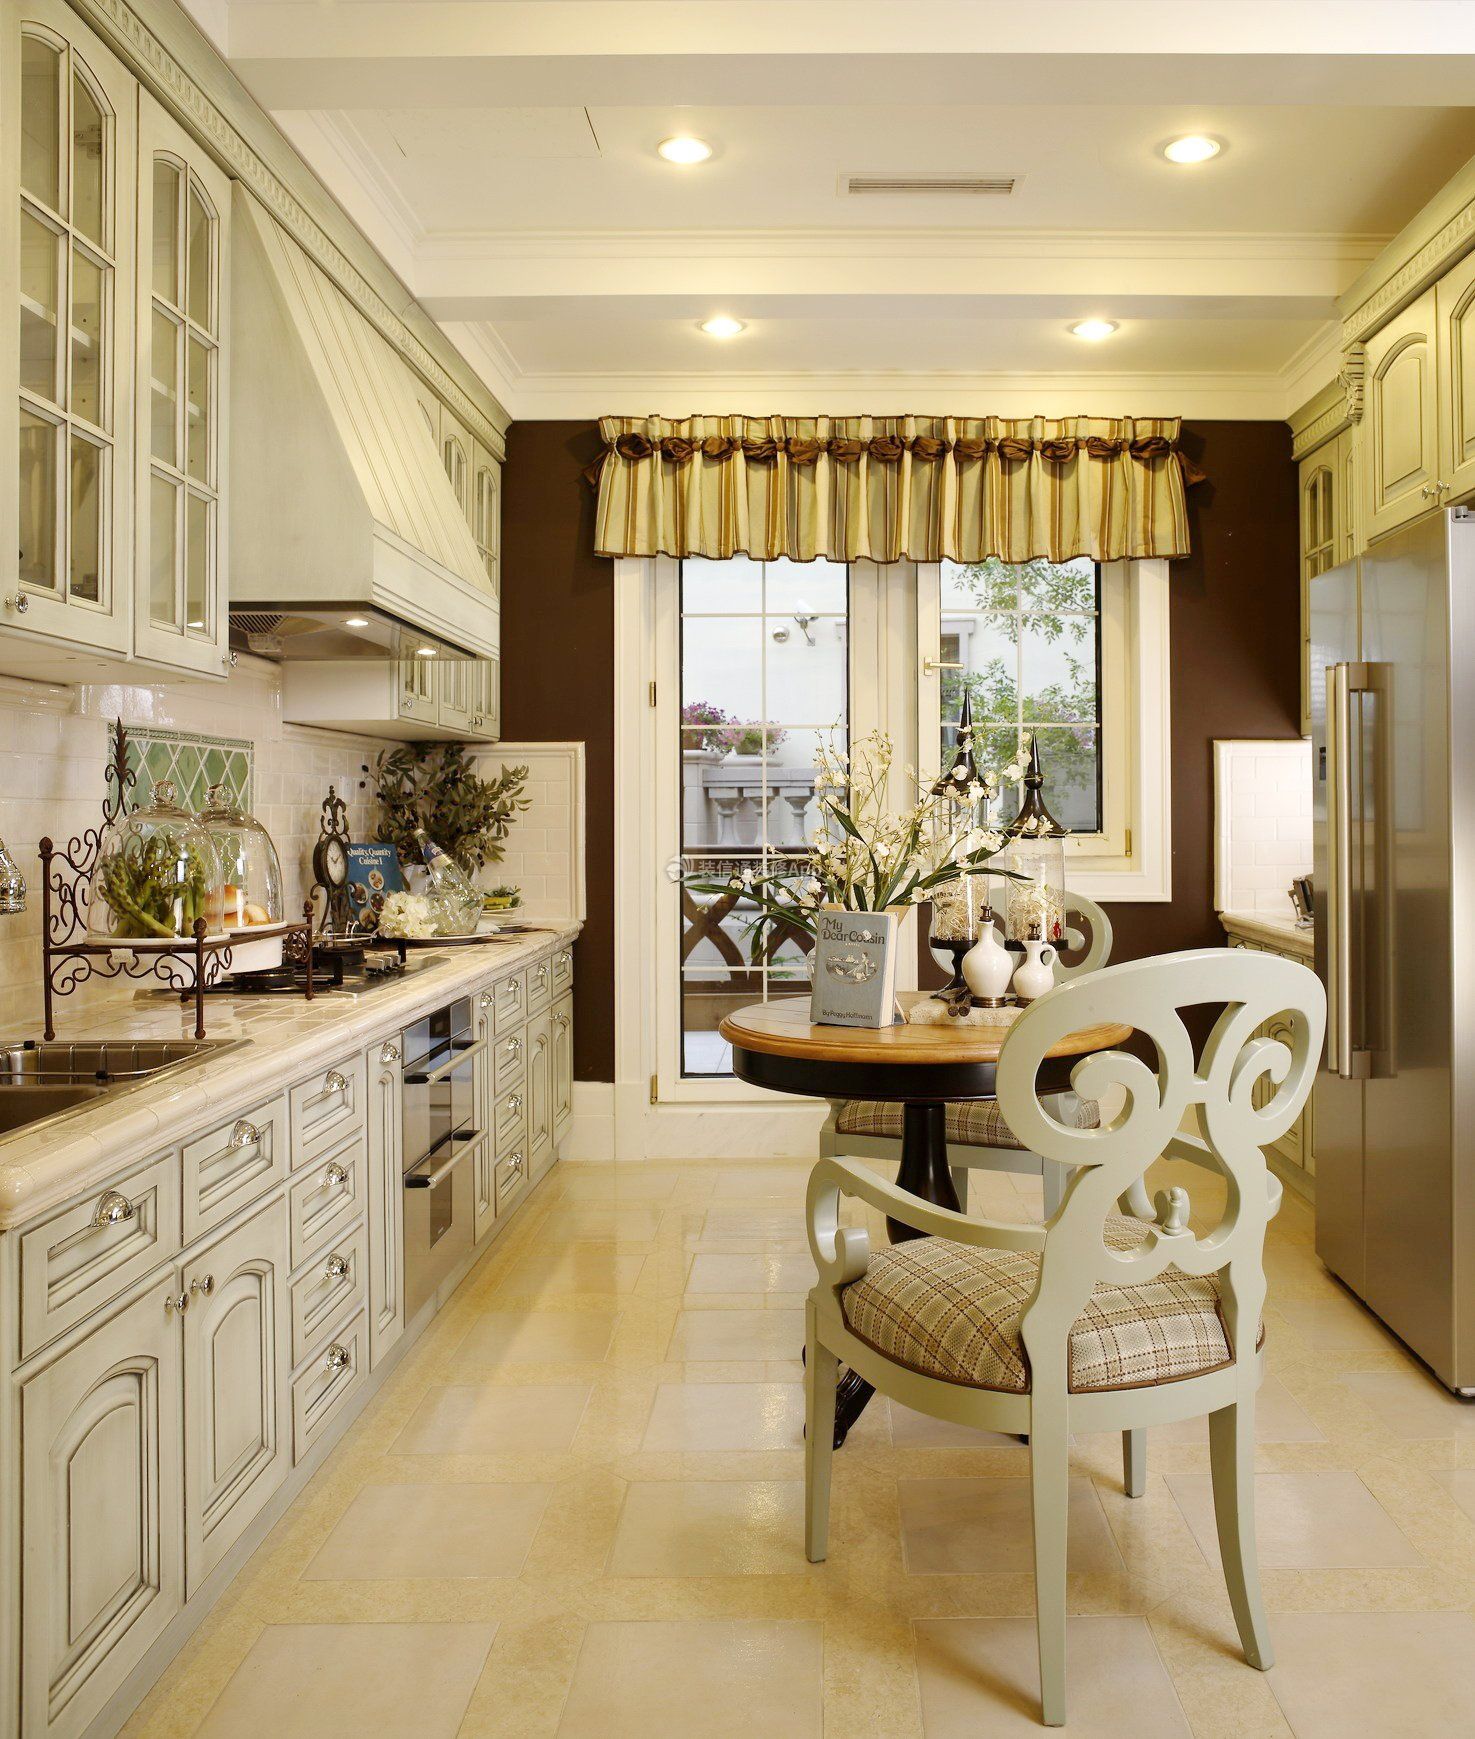 天津家庭别墅一字型厨房橱柜设计装修图片